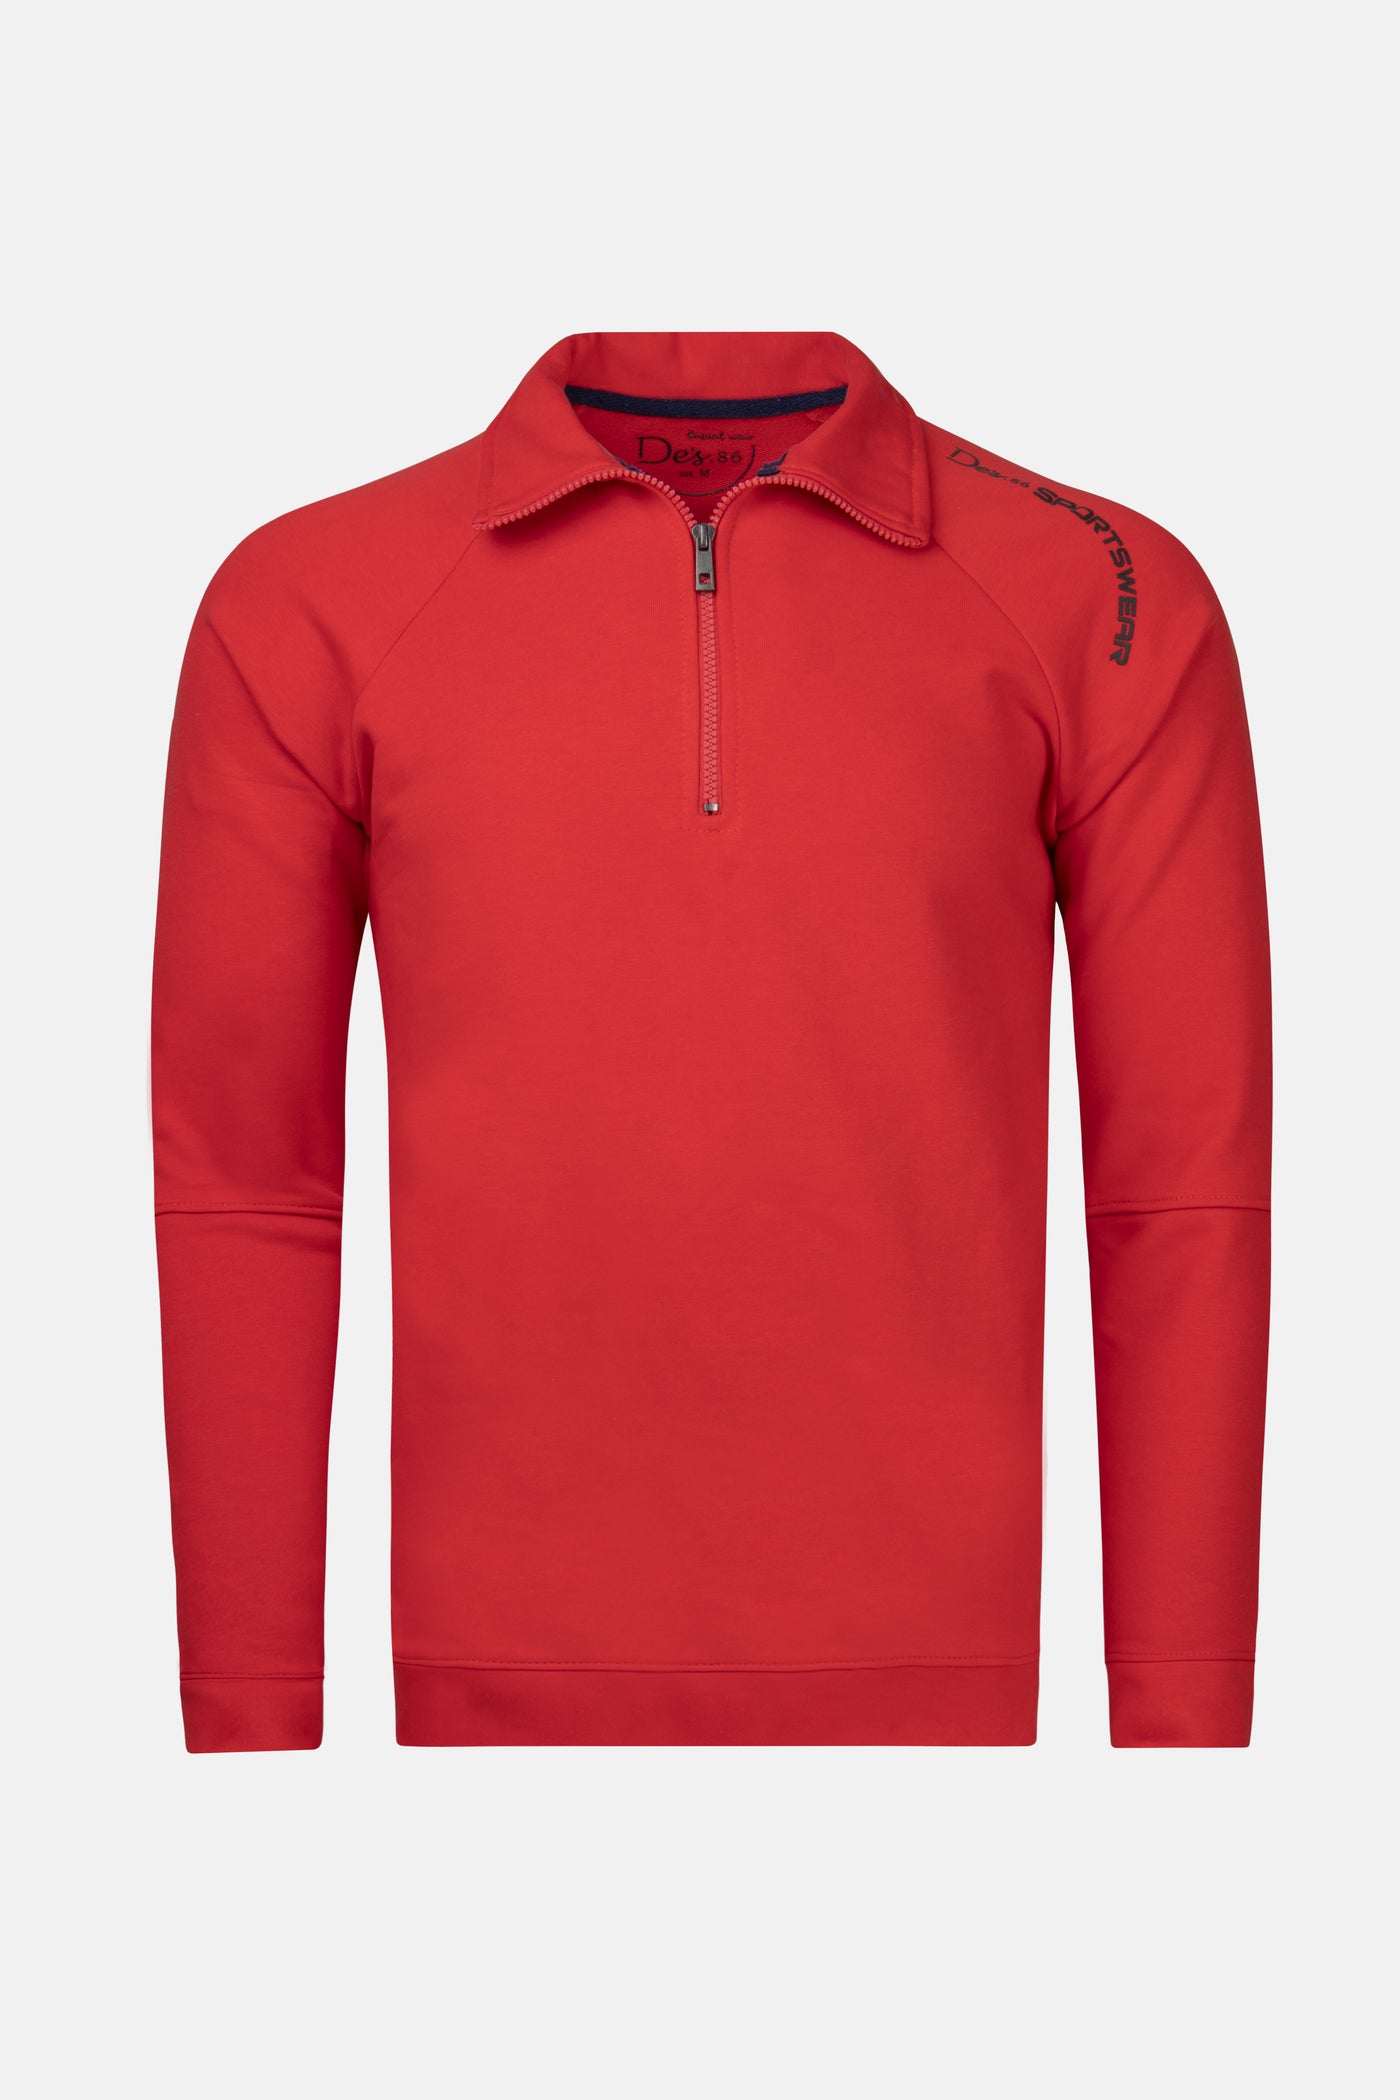 Red half zip Sweatshirt